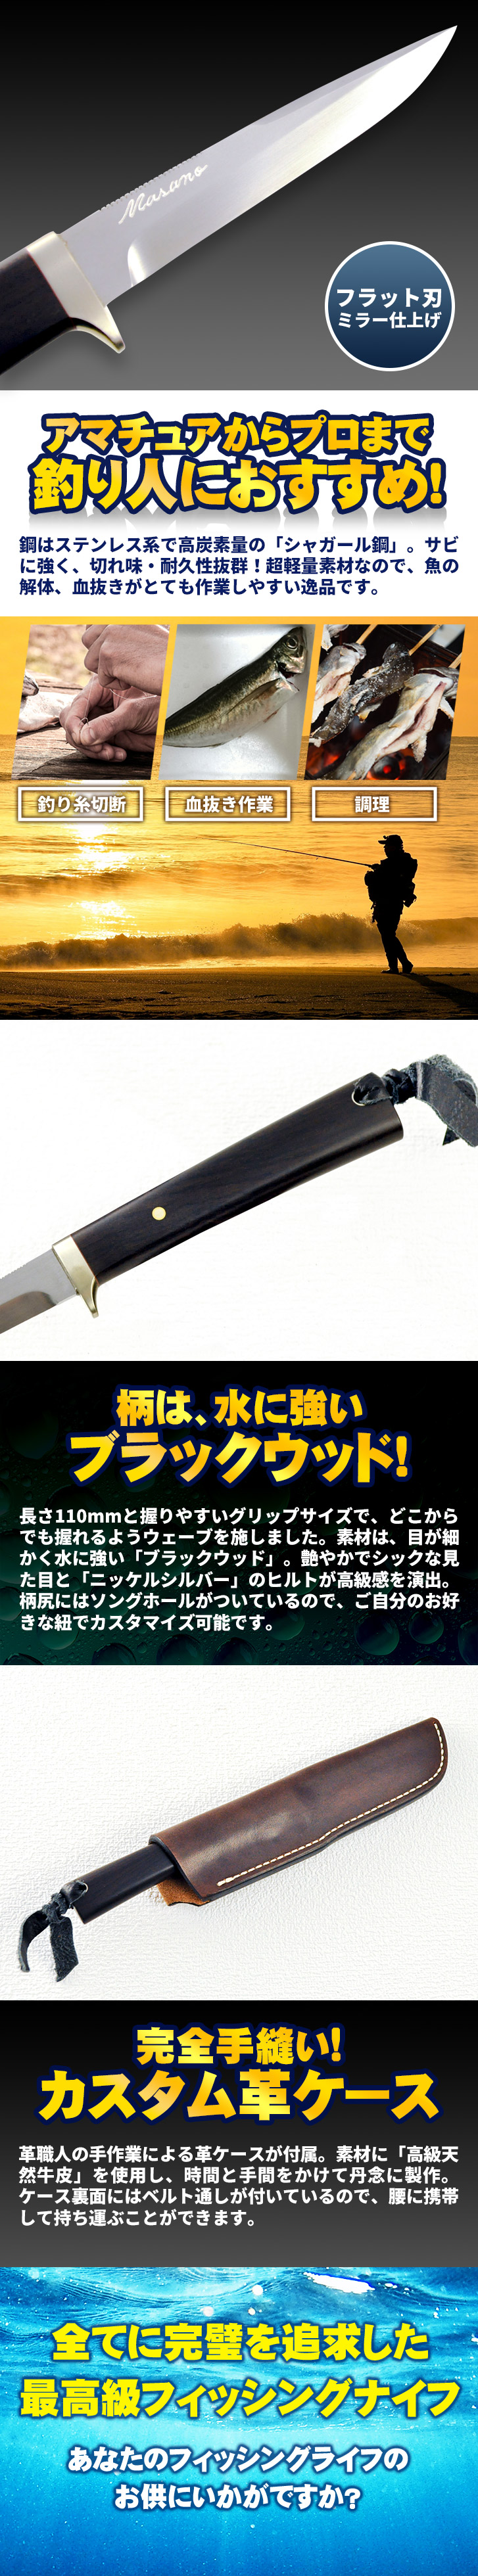 カスタムフィッシング シャガール85 ブラックウッド 和式カスタムナイフ